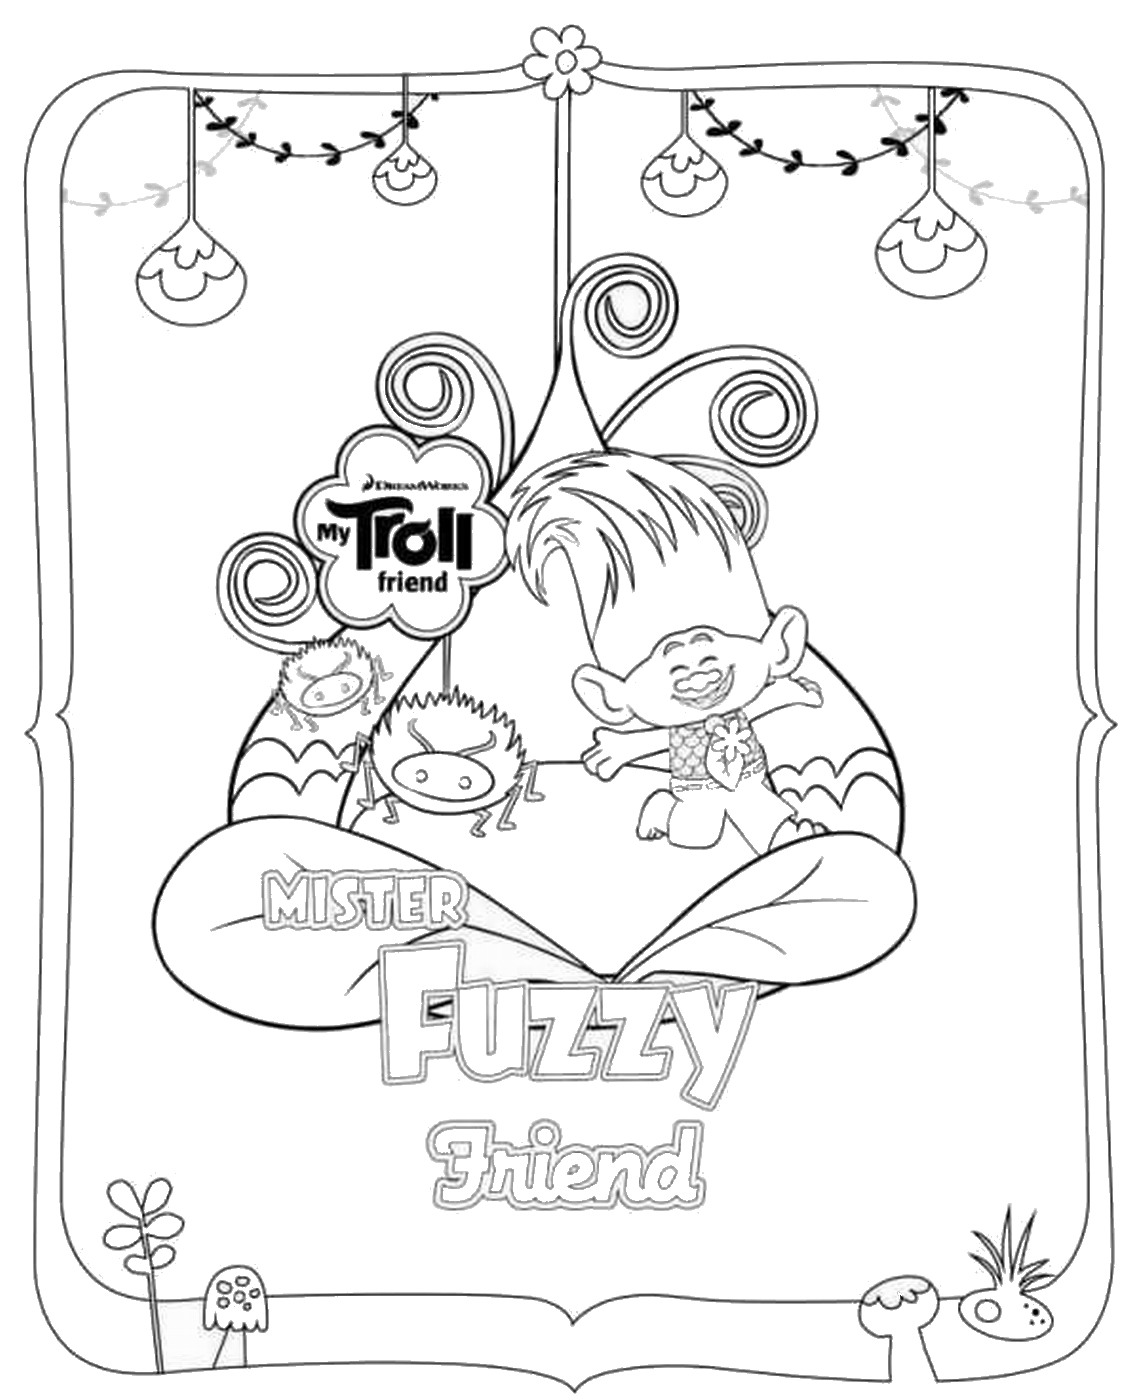 Desenhos para colorir dos Trolls  Poppy coloring page, Disney coloring  pages, Coloring pages